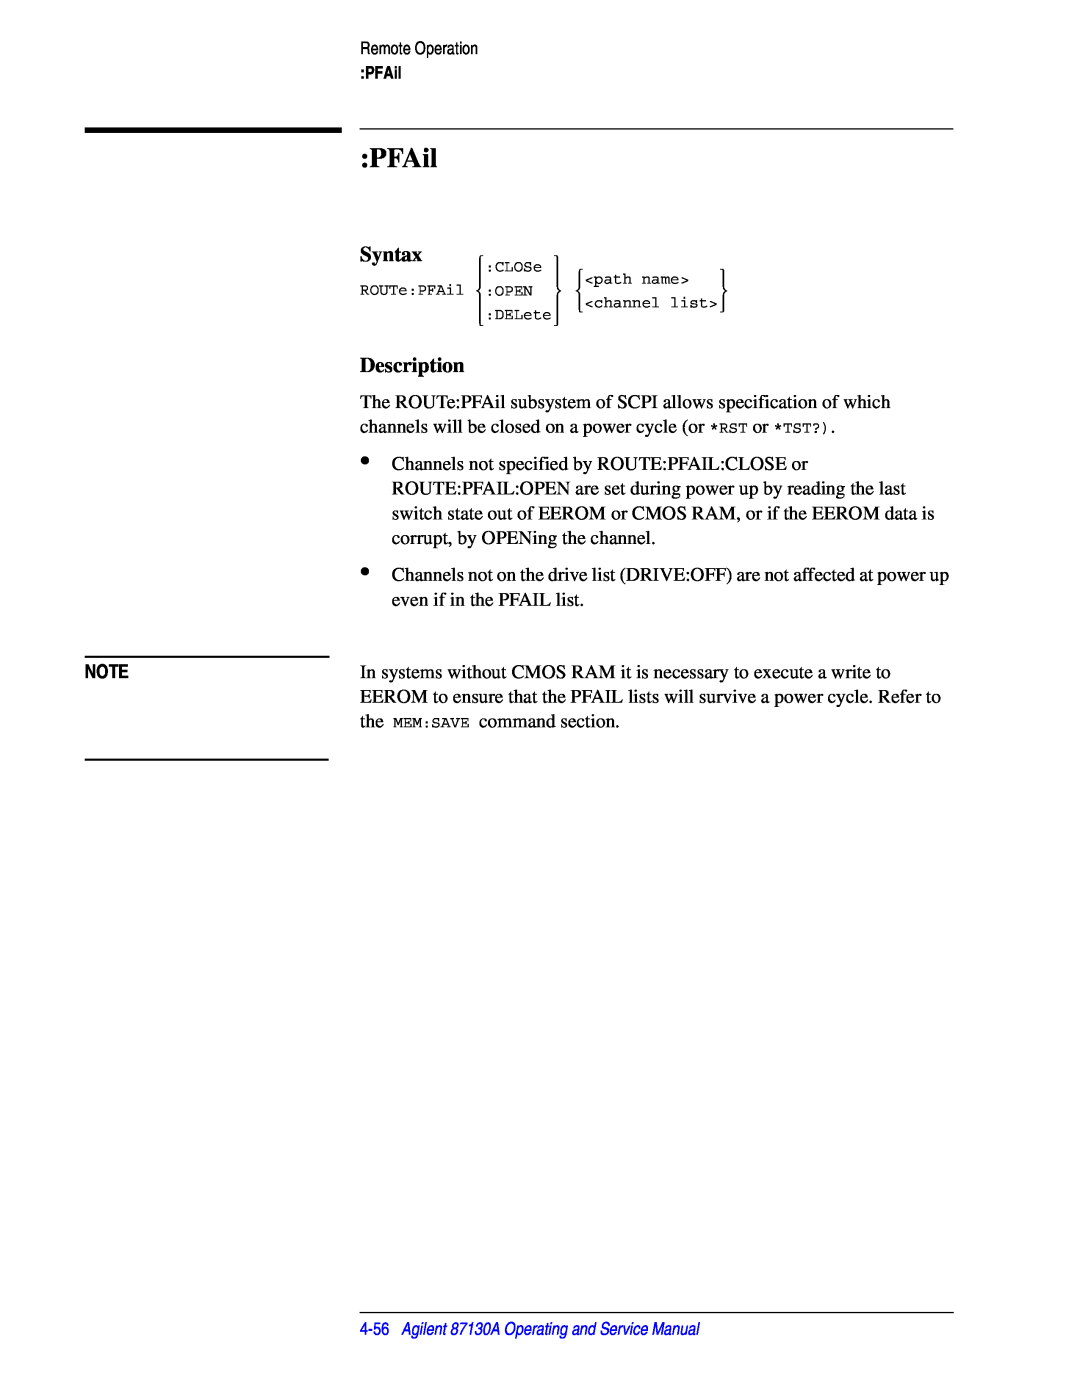 Agilent Technologies 87130A manual PFAil, Syntax, Description 